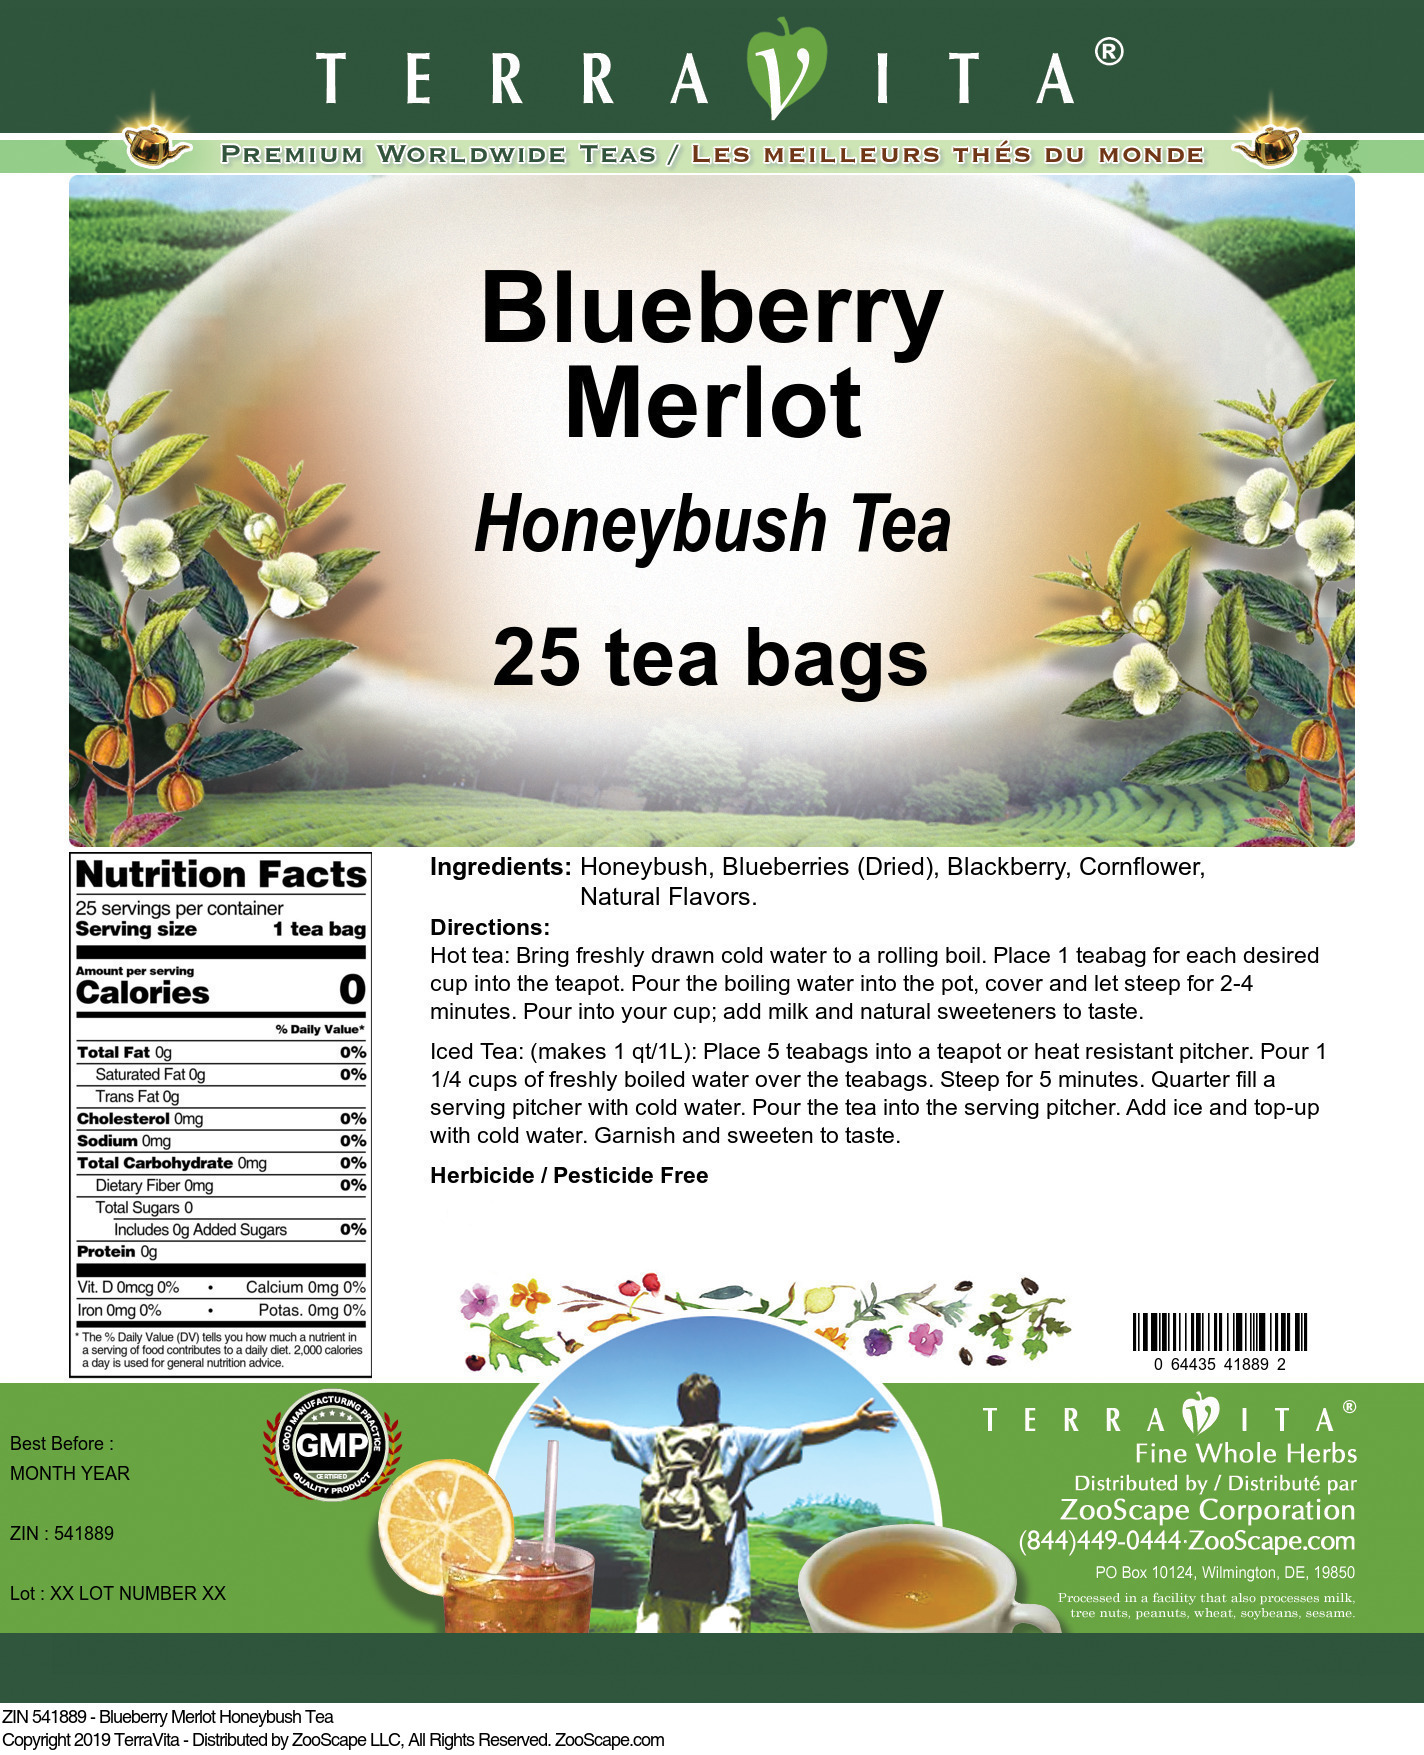 Blueberry Merlot Honeybush Tea - Label